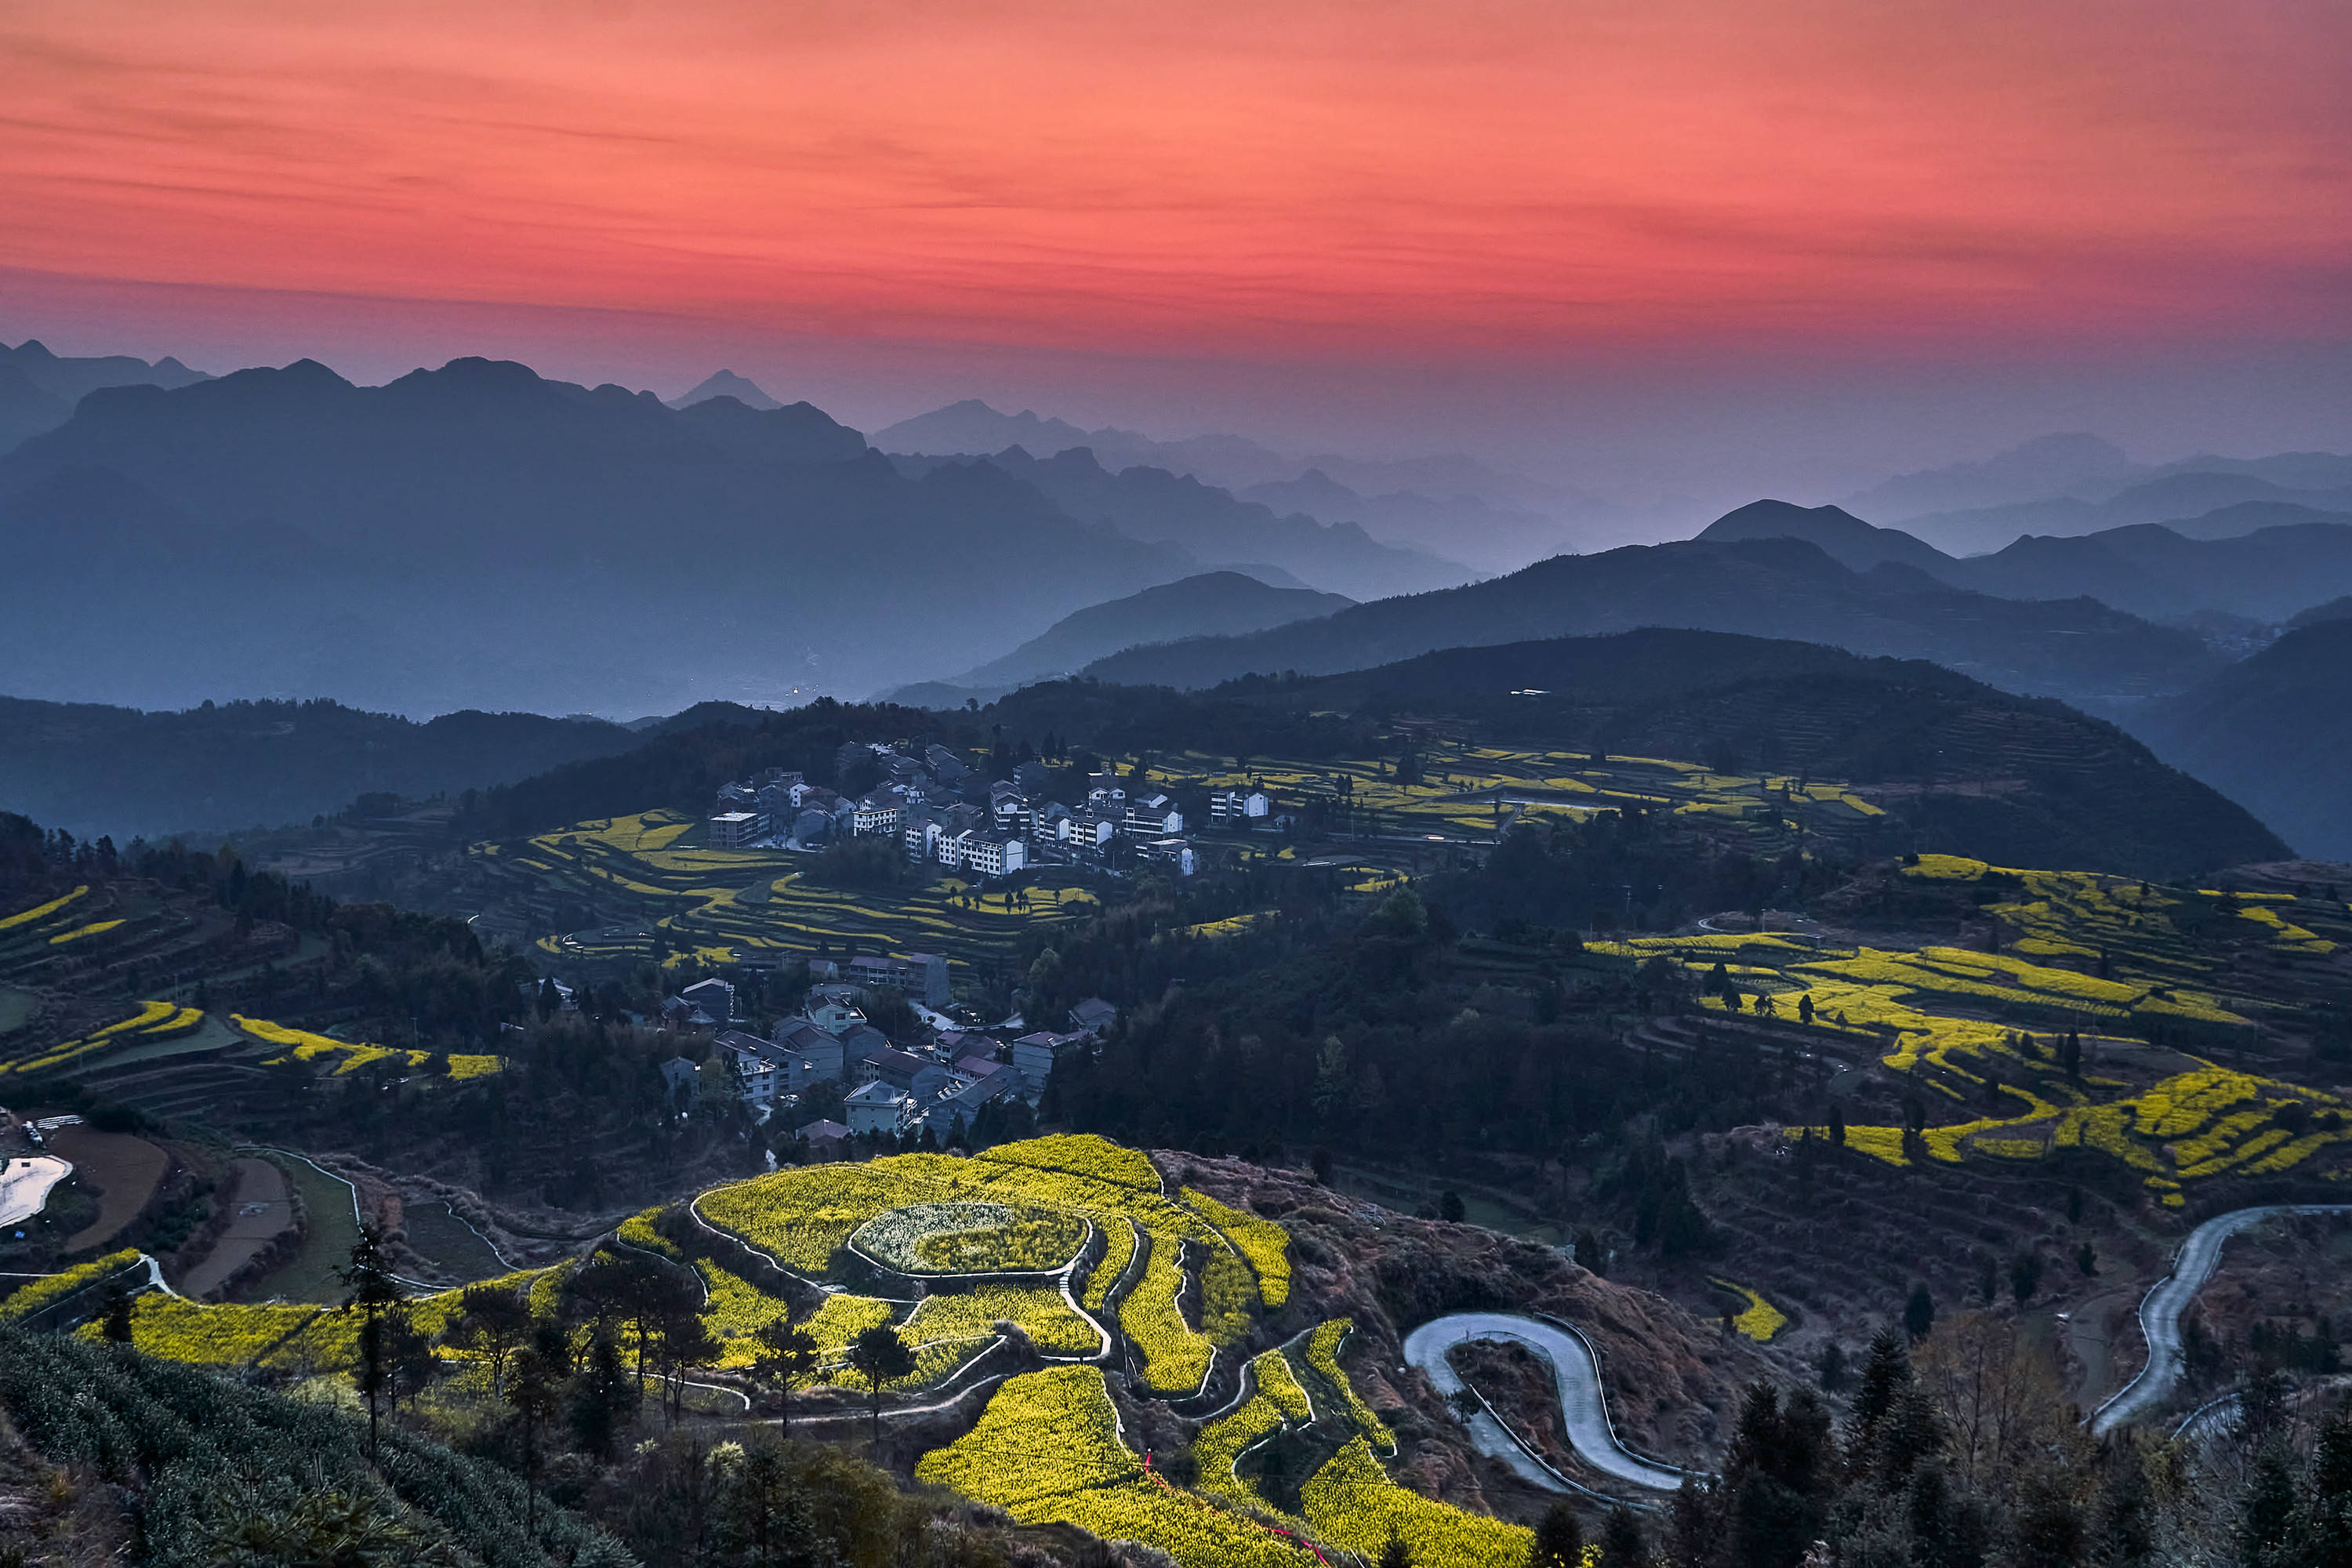 摄影师陈荣升:美丽乡村的如画风景